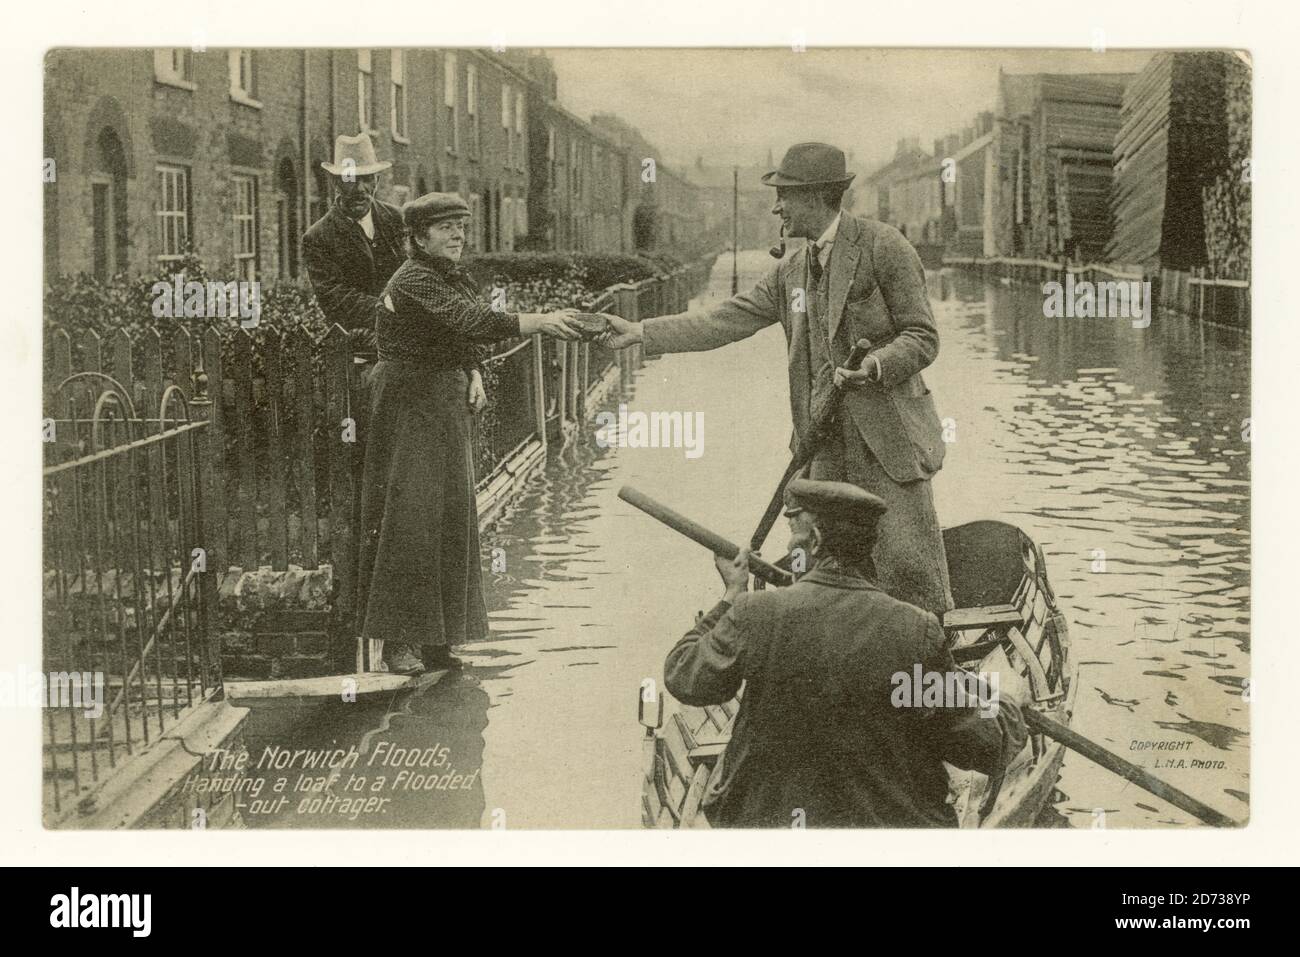 Cartolina dei primi del 1900 di strade allagate a Norwich il 26 agosto 1912 dal titolo "consegna di una pagnotta ad un cotager allagato", Lothian Street con cuscini in legno sulla destra Foto Stock